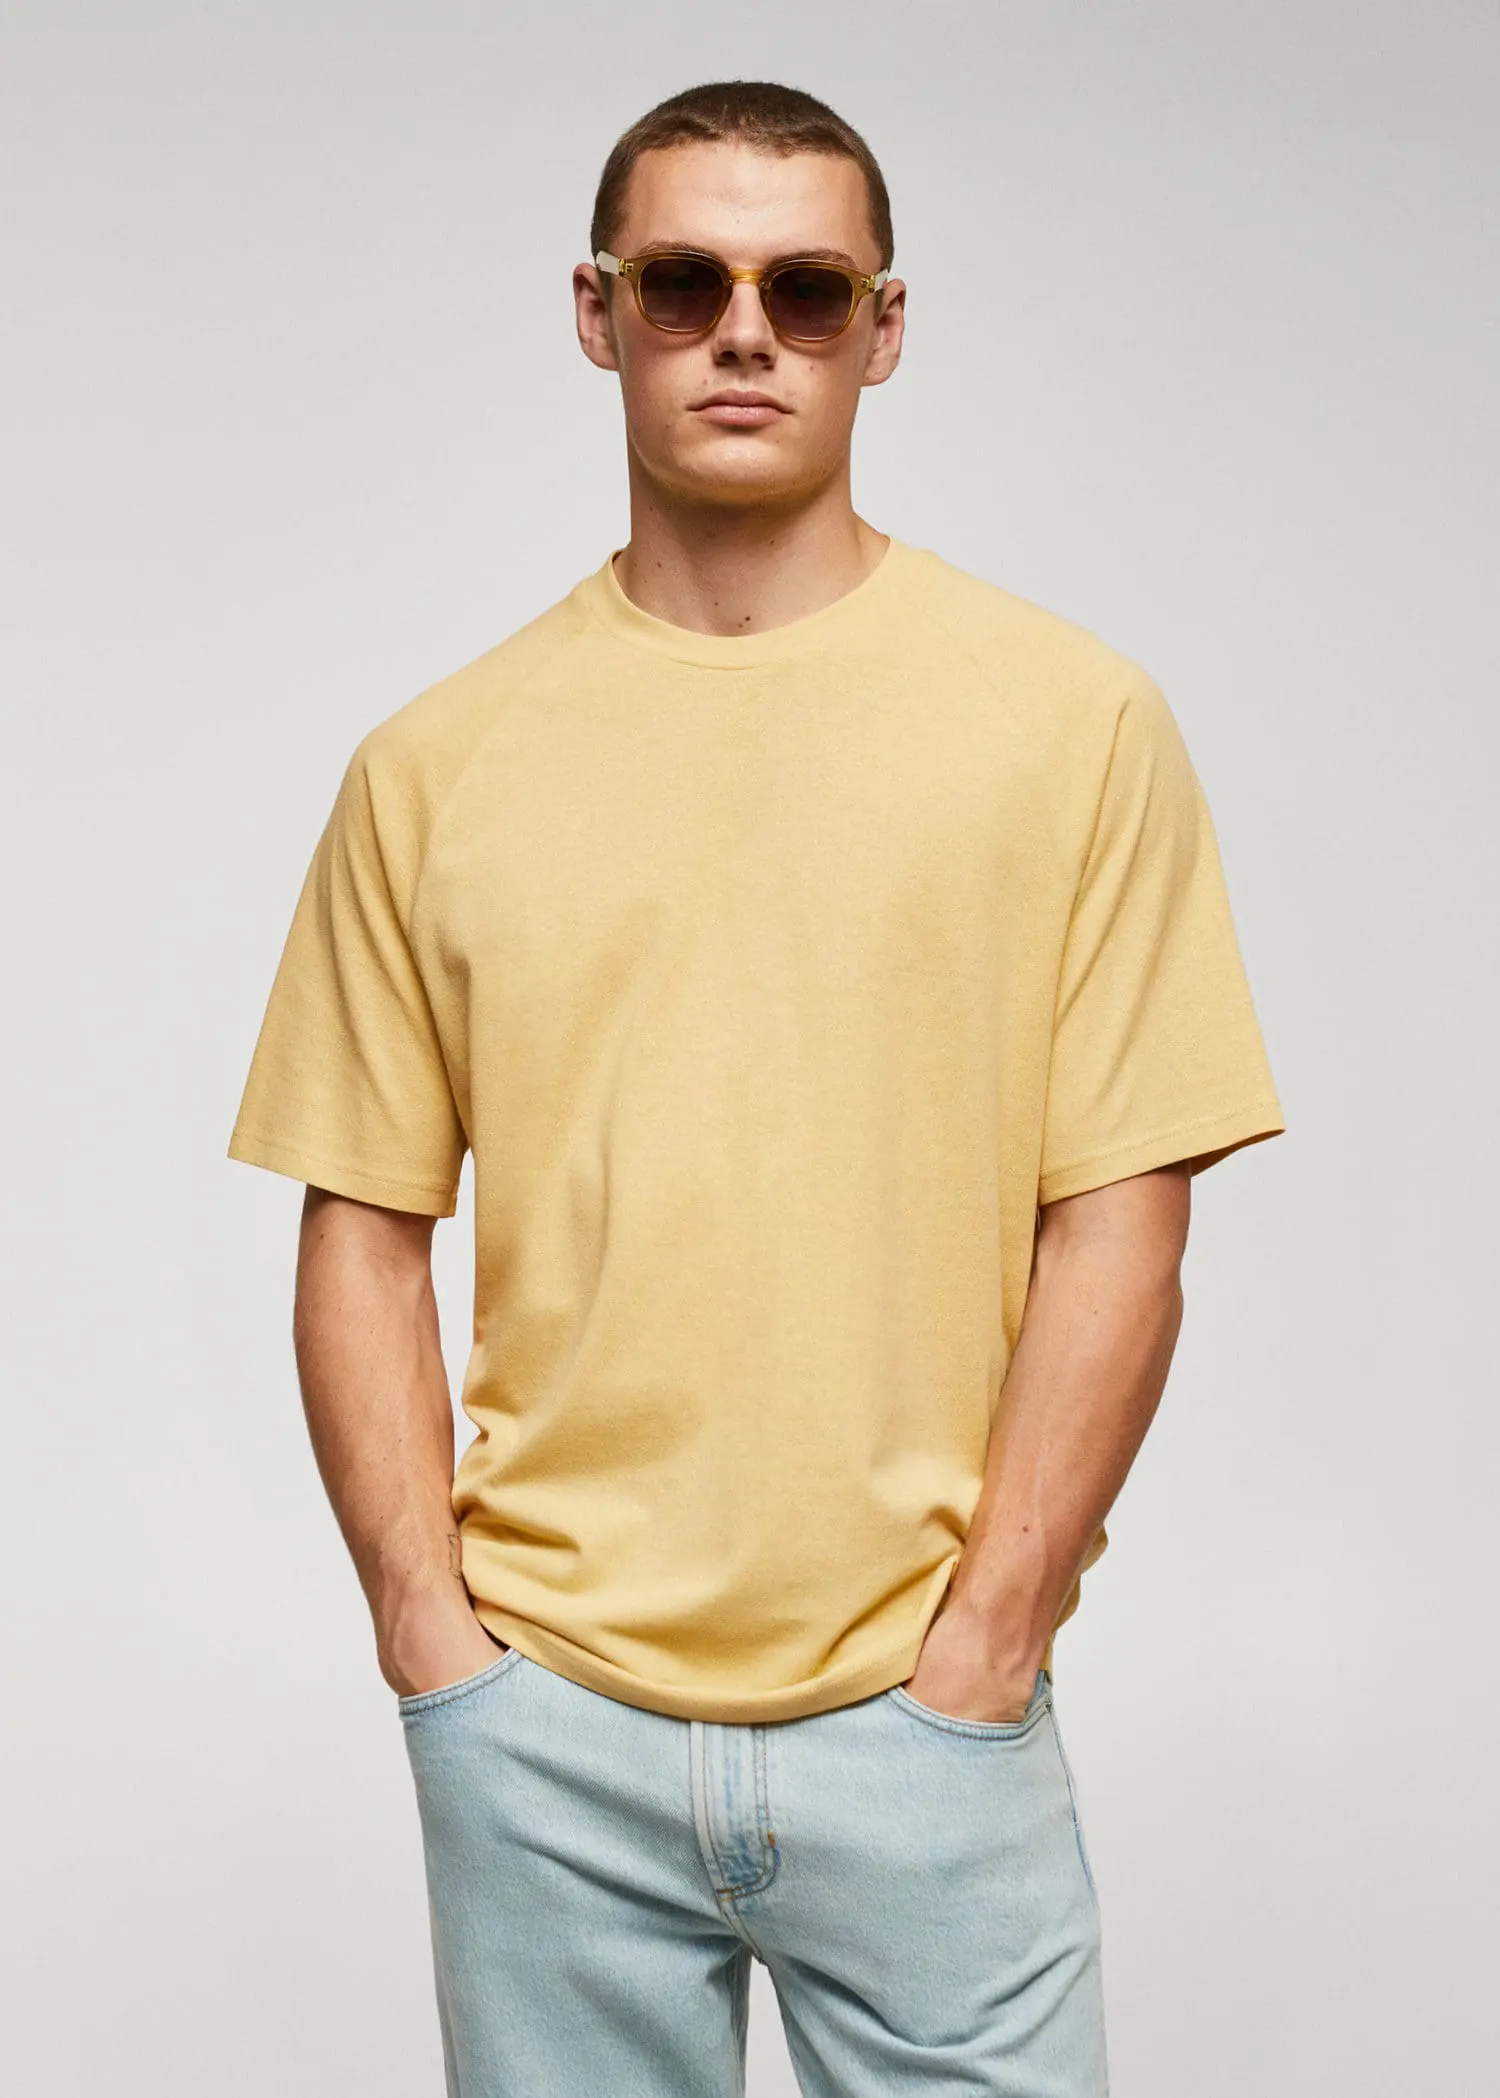 Mango Textured cotton-linen t-shirt. a man wearing a yellow shirt and sunglasses. 